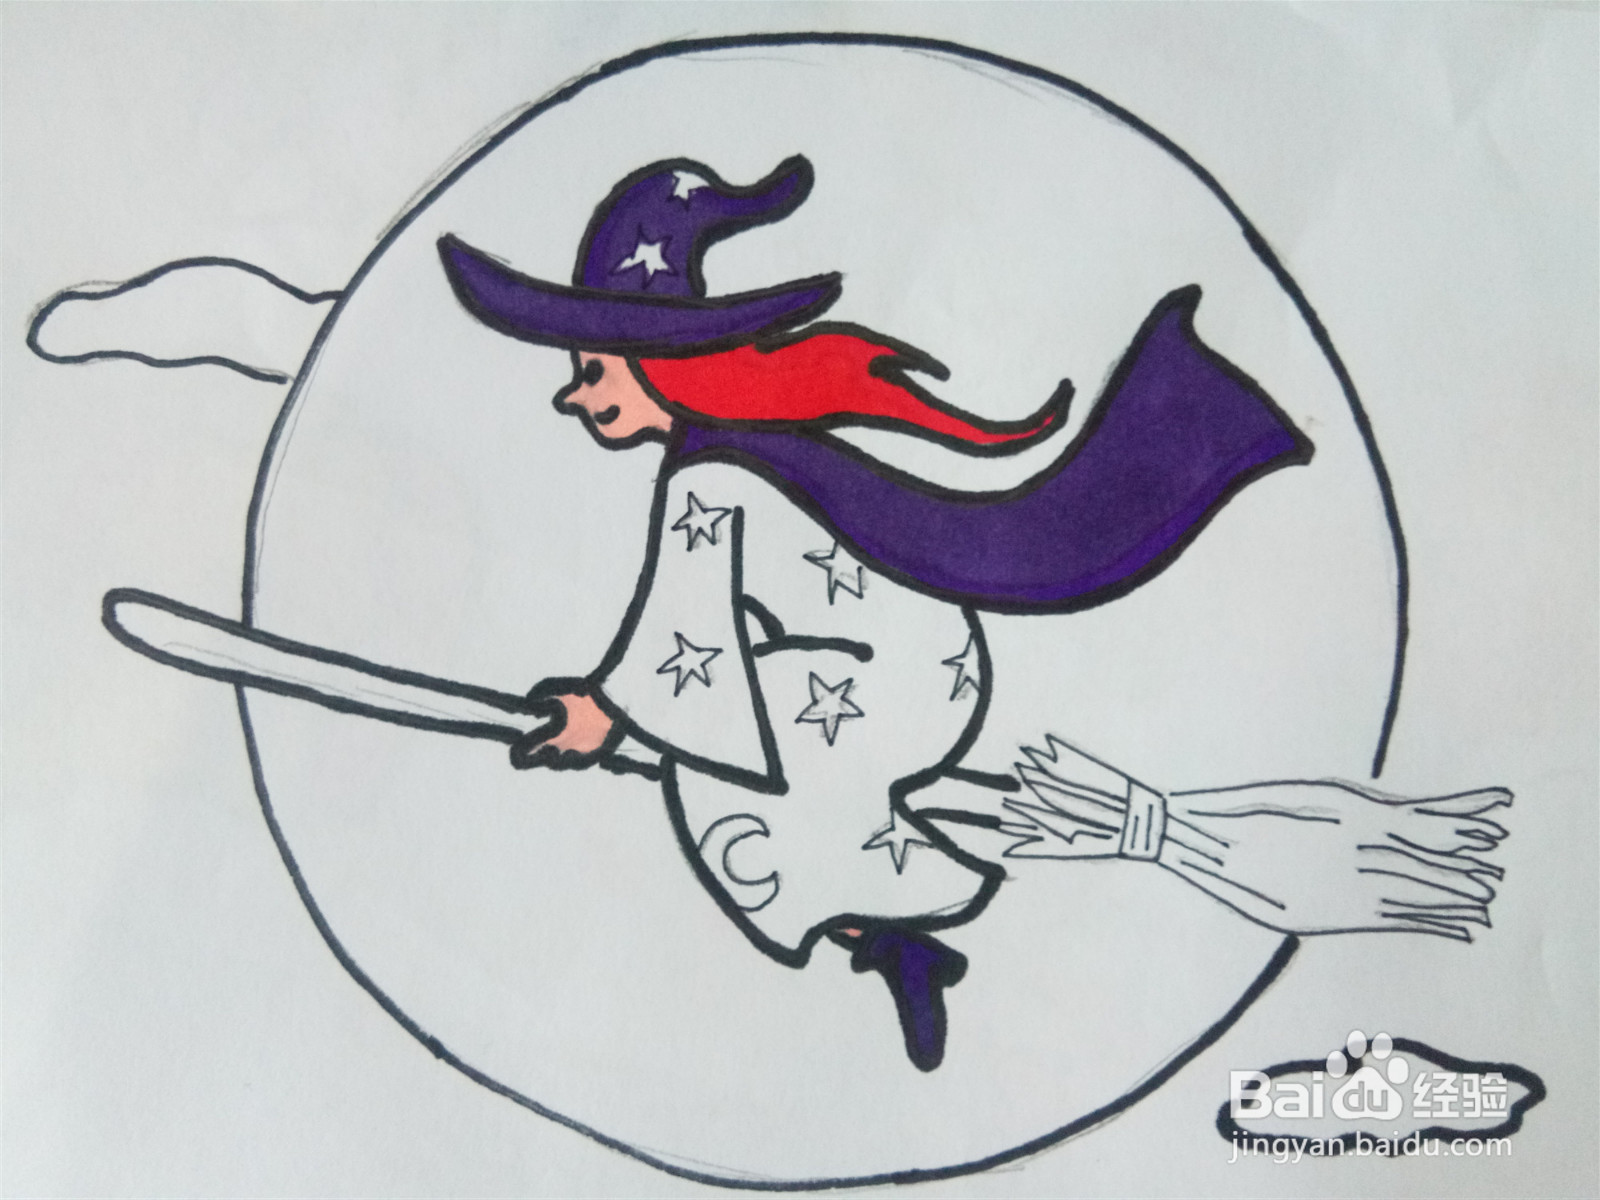 骑扫帚的小魔女简笔画图片